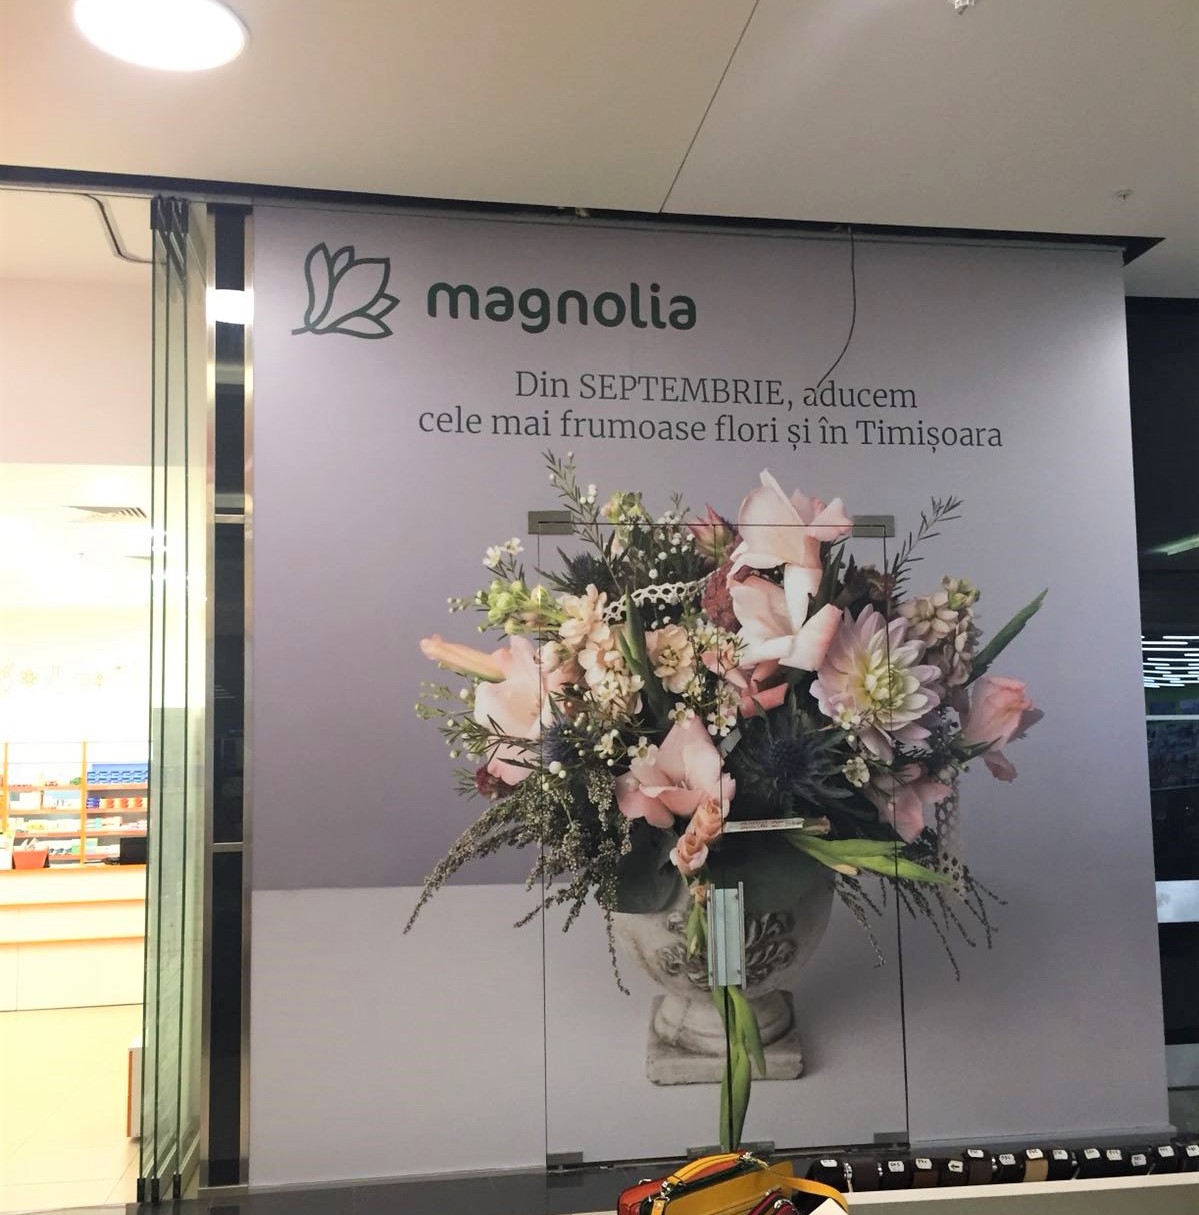 Magnolia deschide o nouă florărie în Timișoara